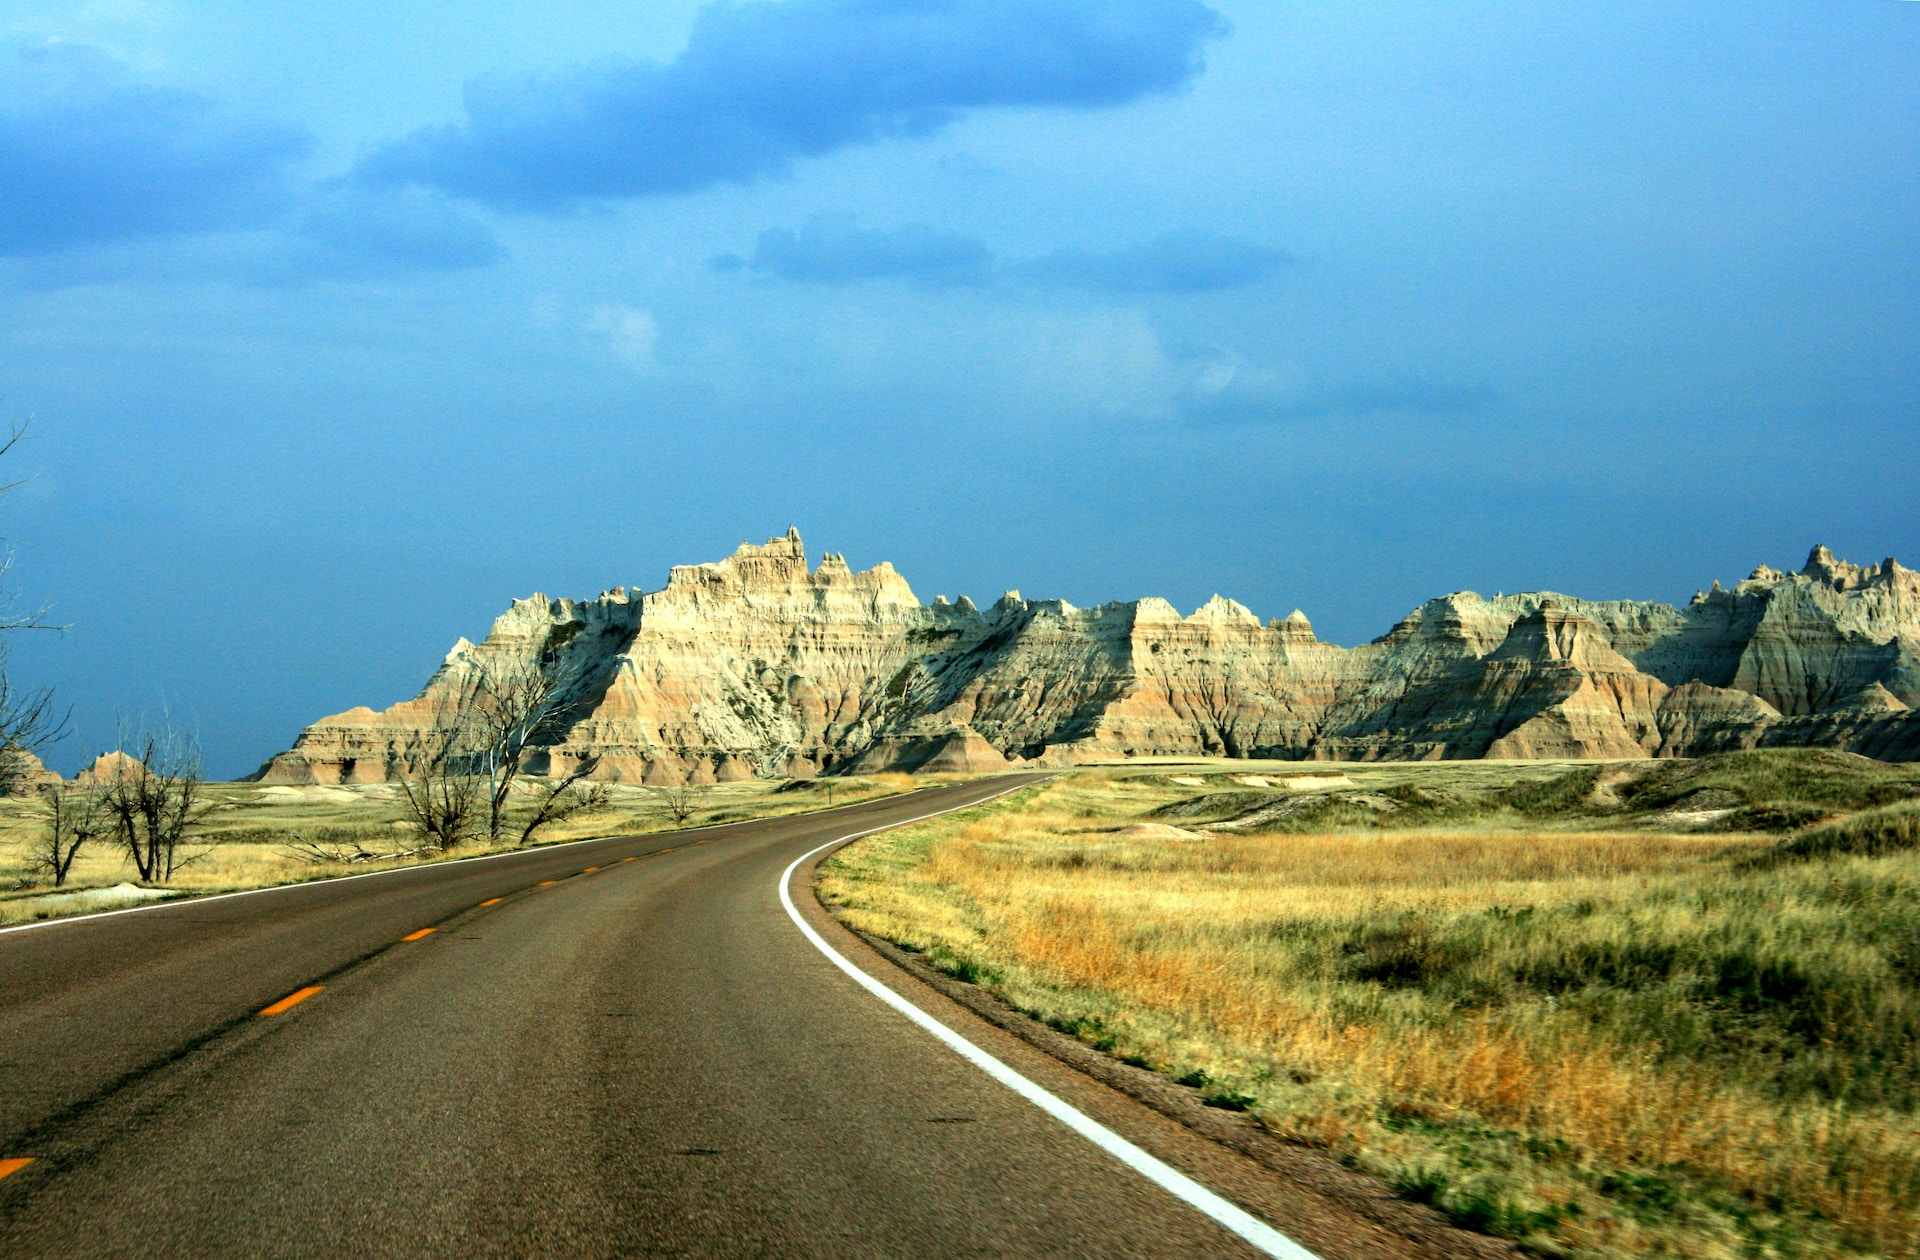 A road in South Dakota.